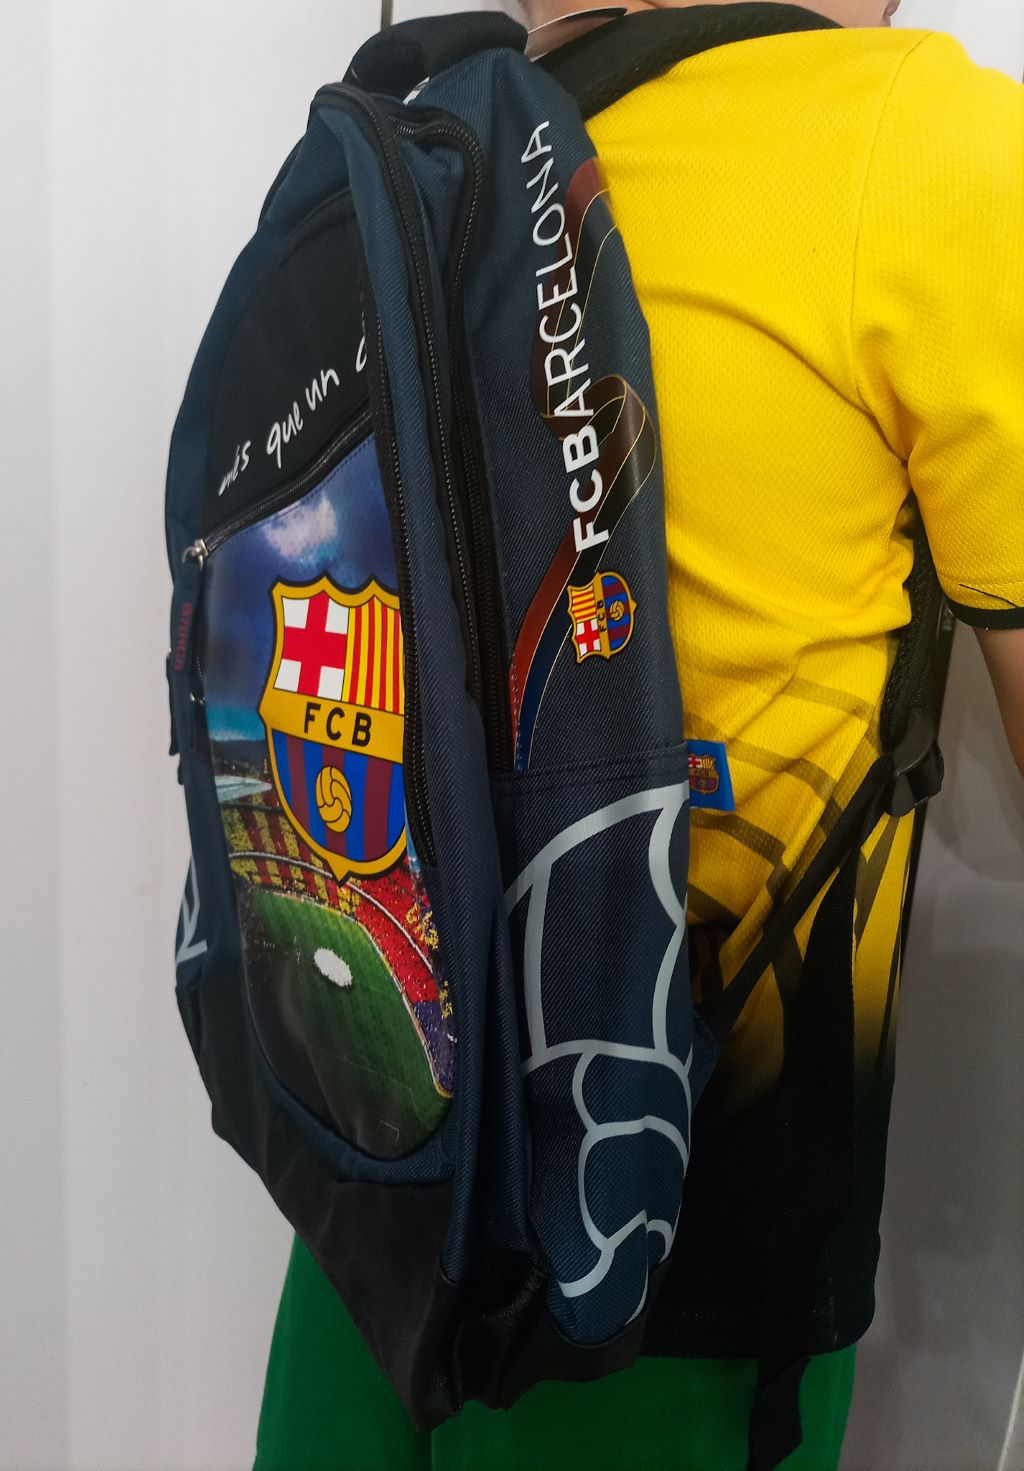 czterokomorowy plecak szkolny FC Barcelona zdjęcie 2